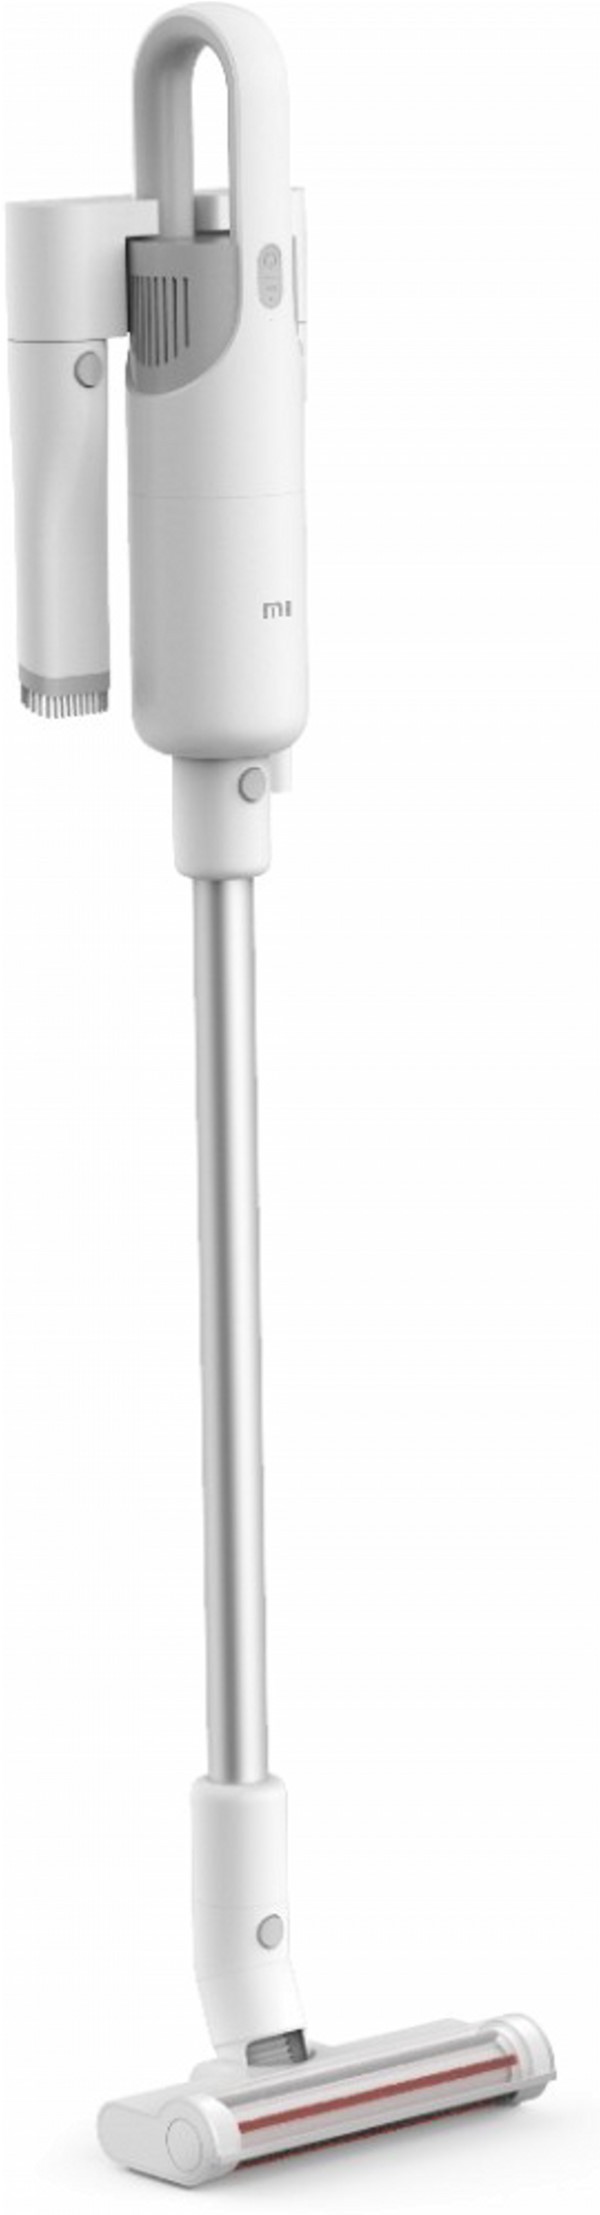 Пылесос Xiaomi Mi Vacuum Cleaner Light цена 3999.00 грн - фотография 2